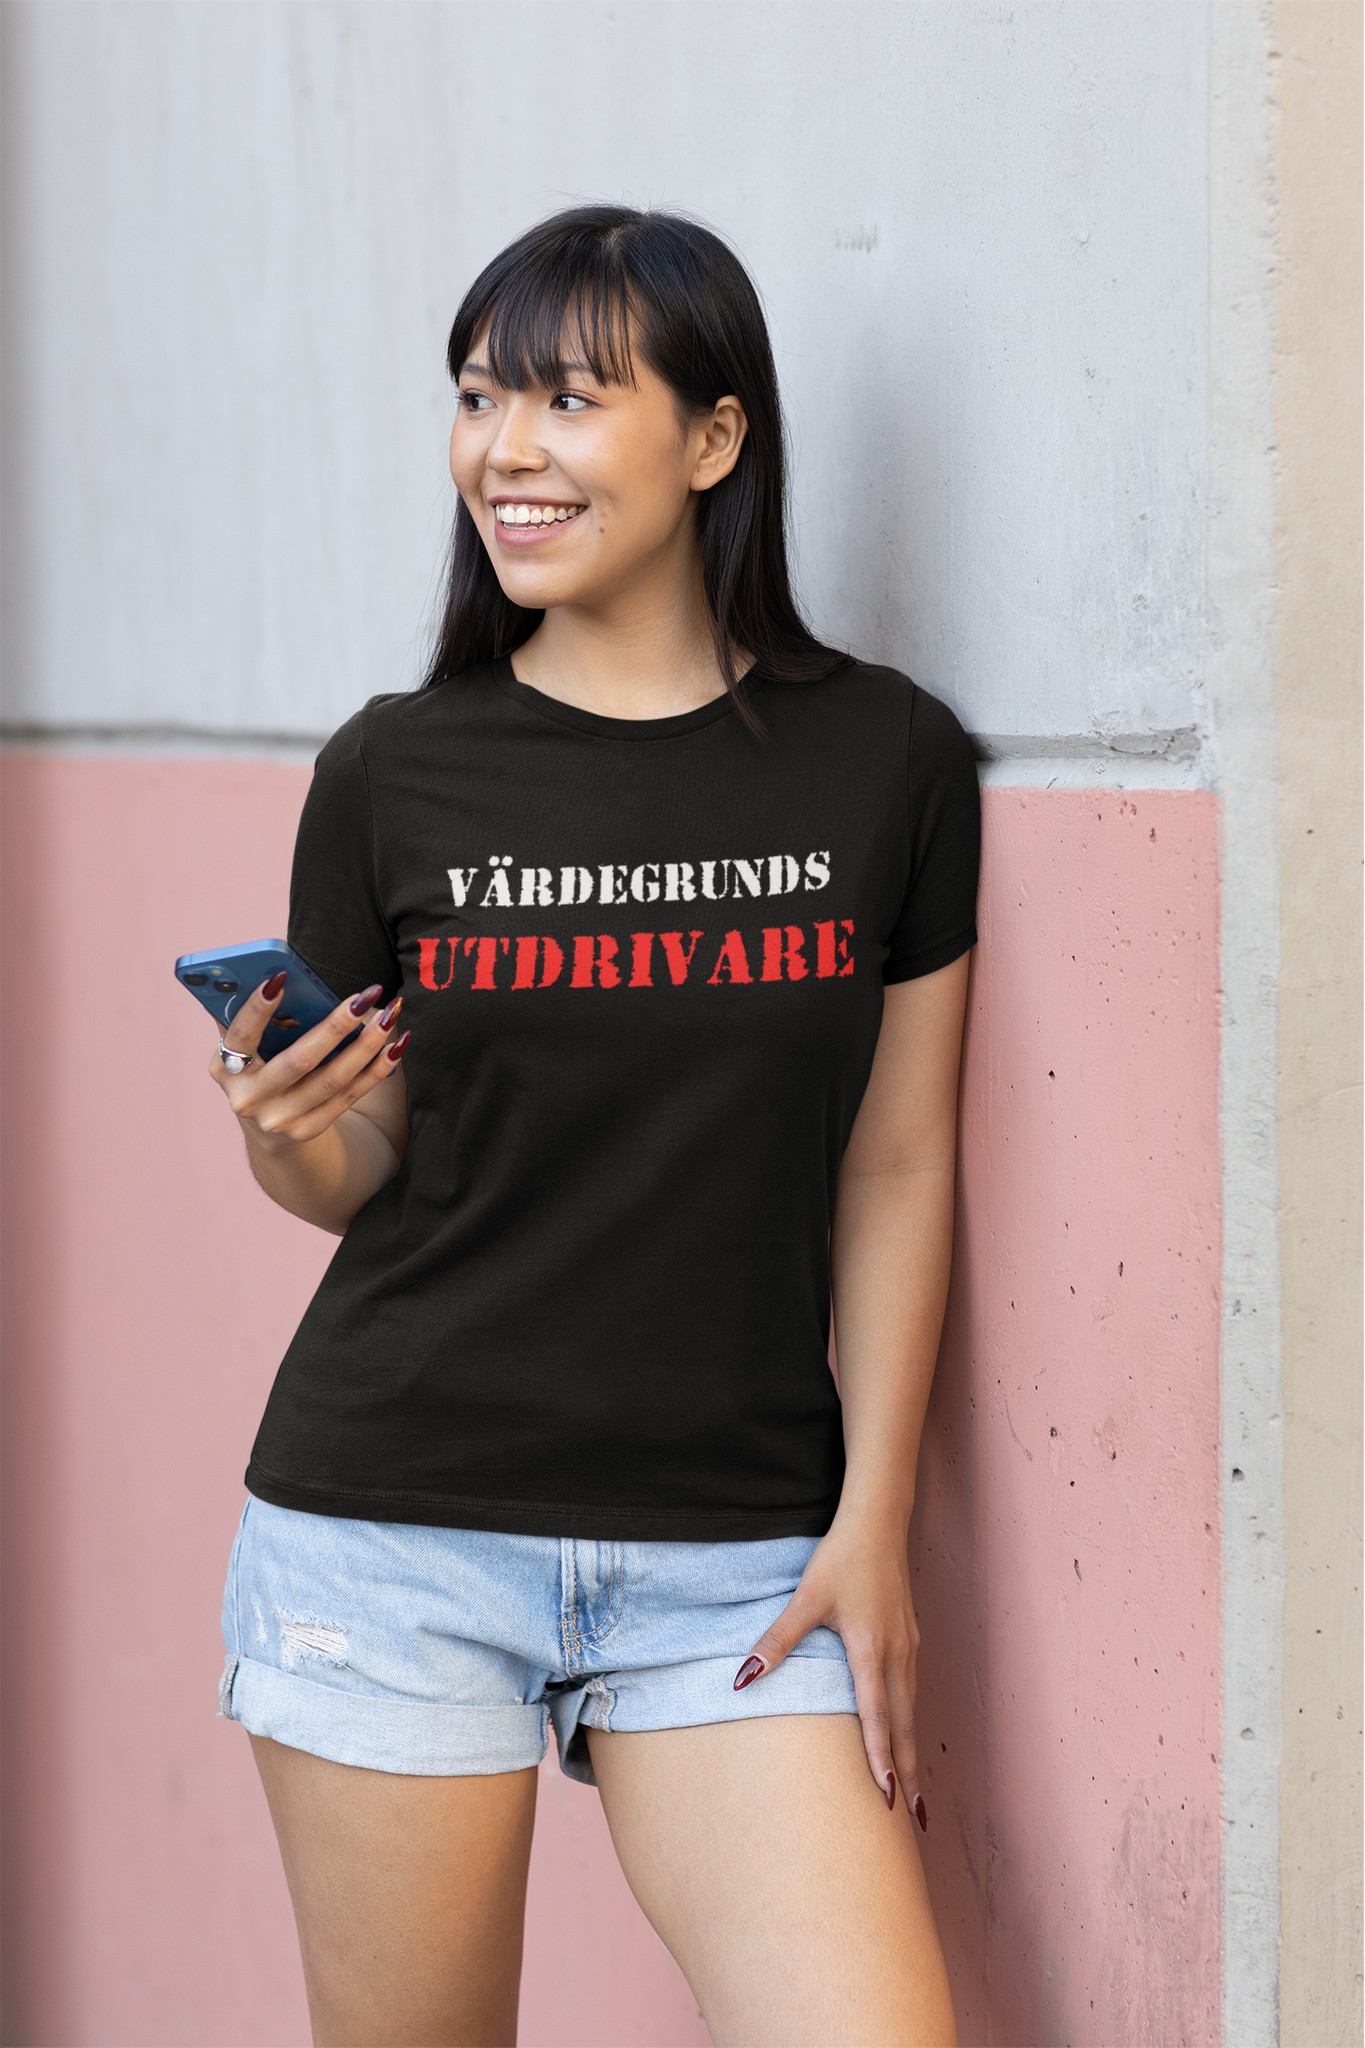 Värdegrunds Utdrivare T-Shirt Women